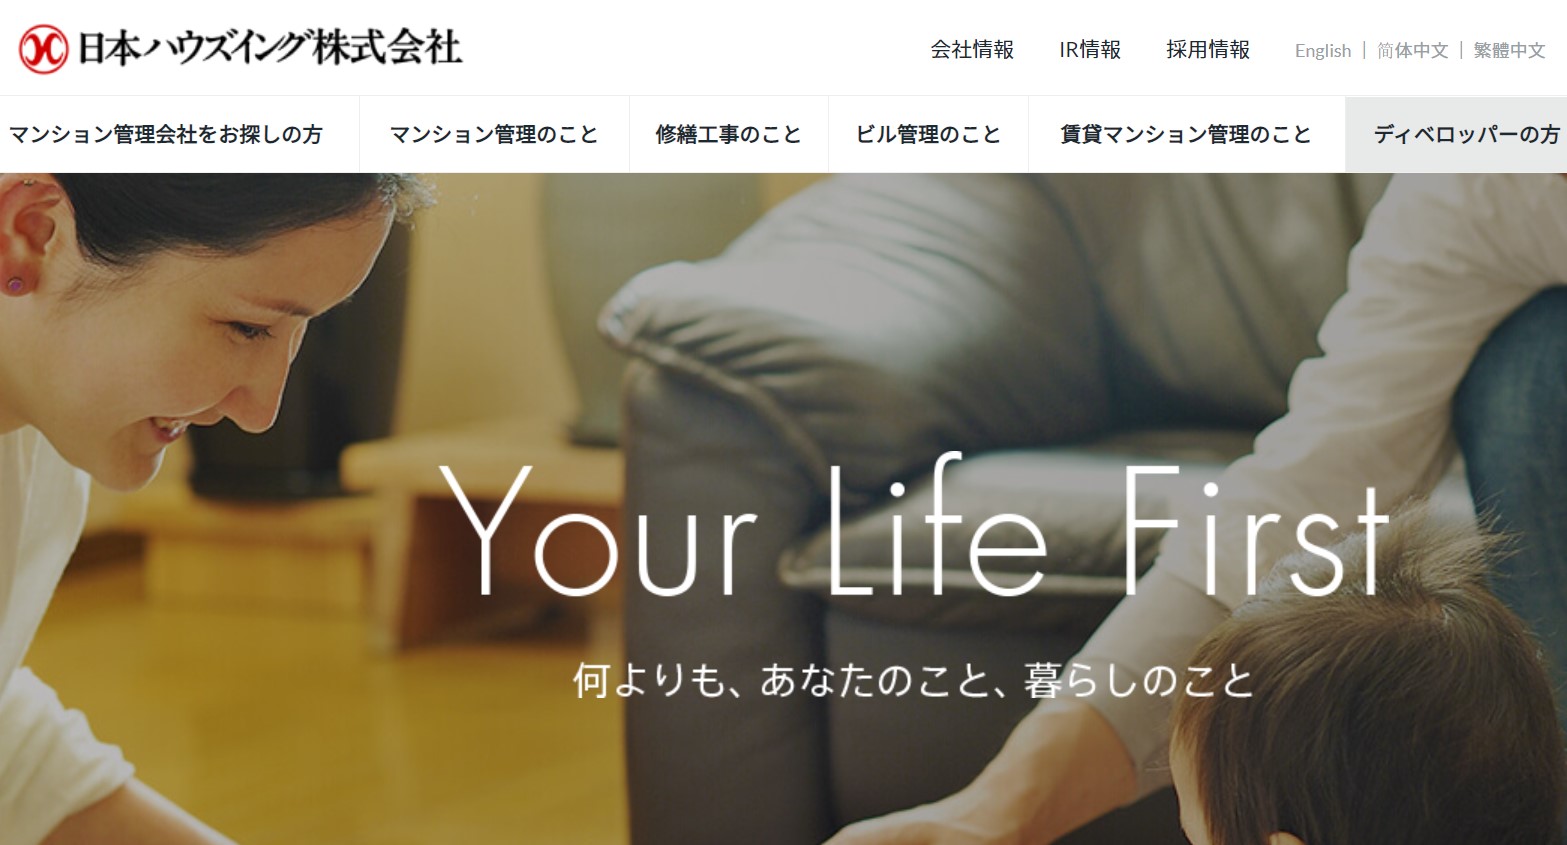 日本ハウズイング公式サイト